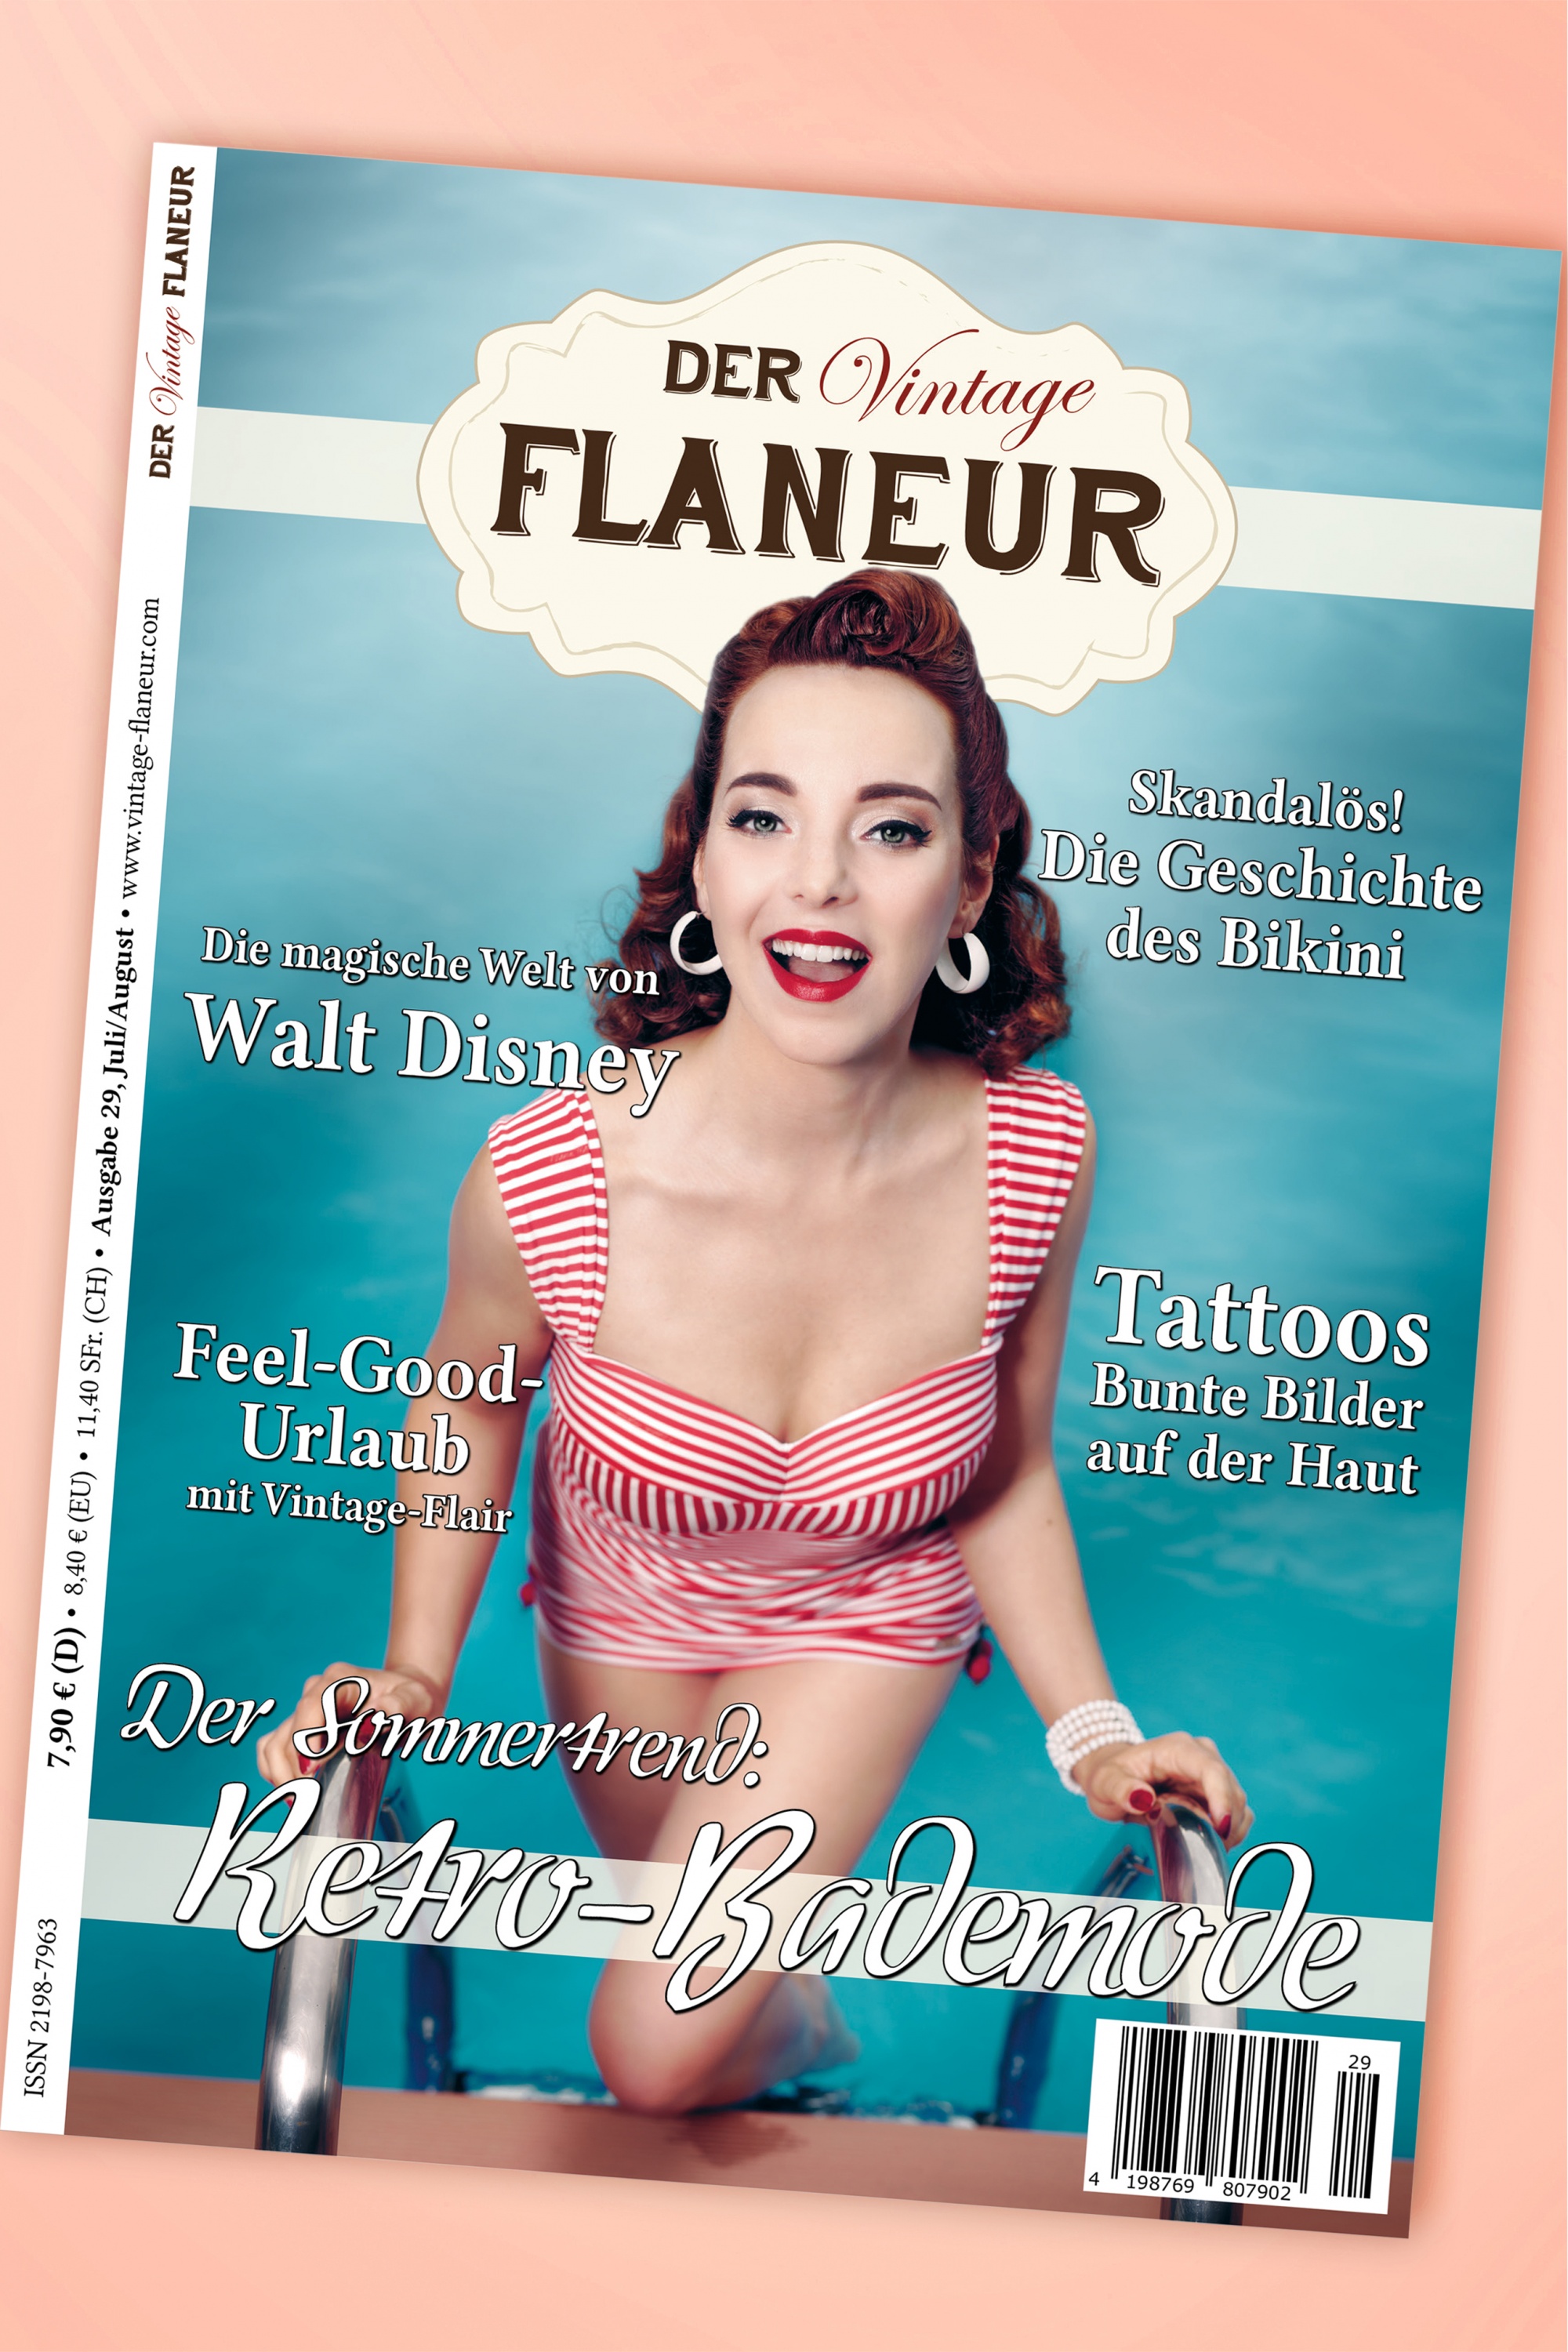 Der Vintage Flaneur - Der Vintage Flaneur Uitgegeven op 29, 2018